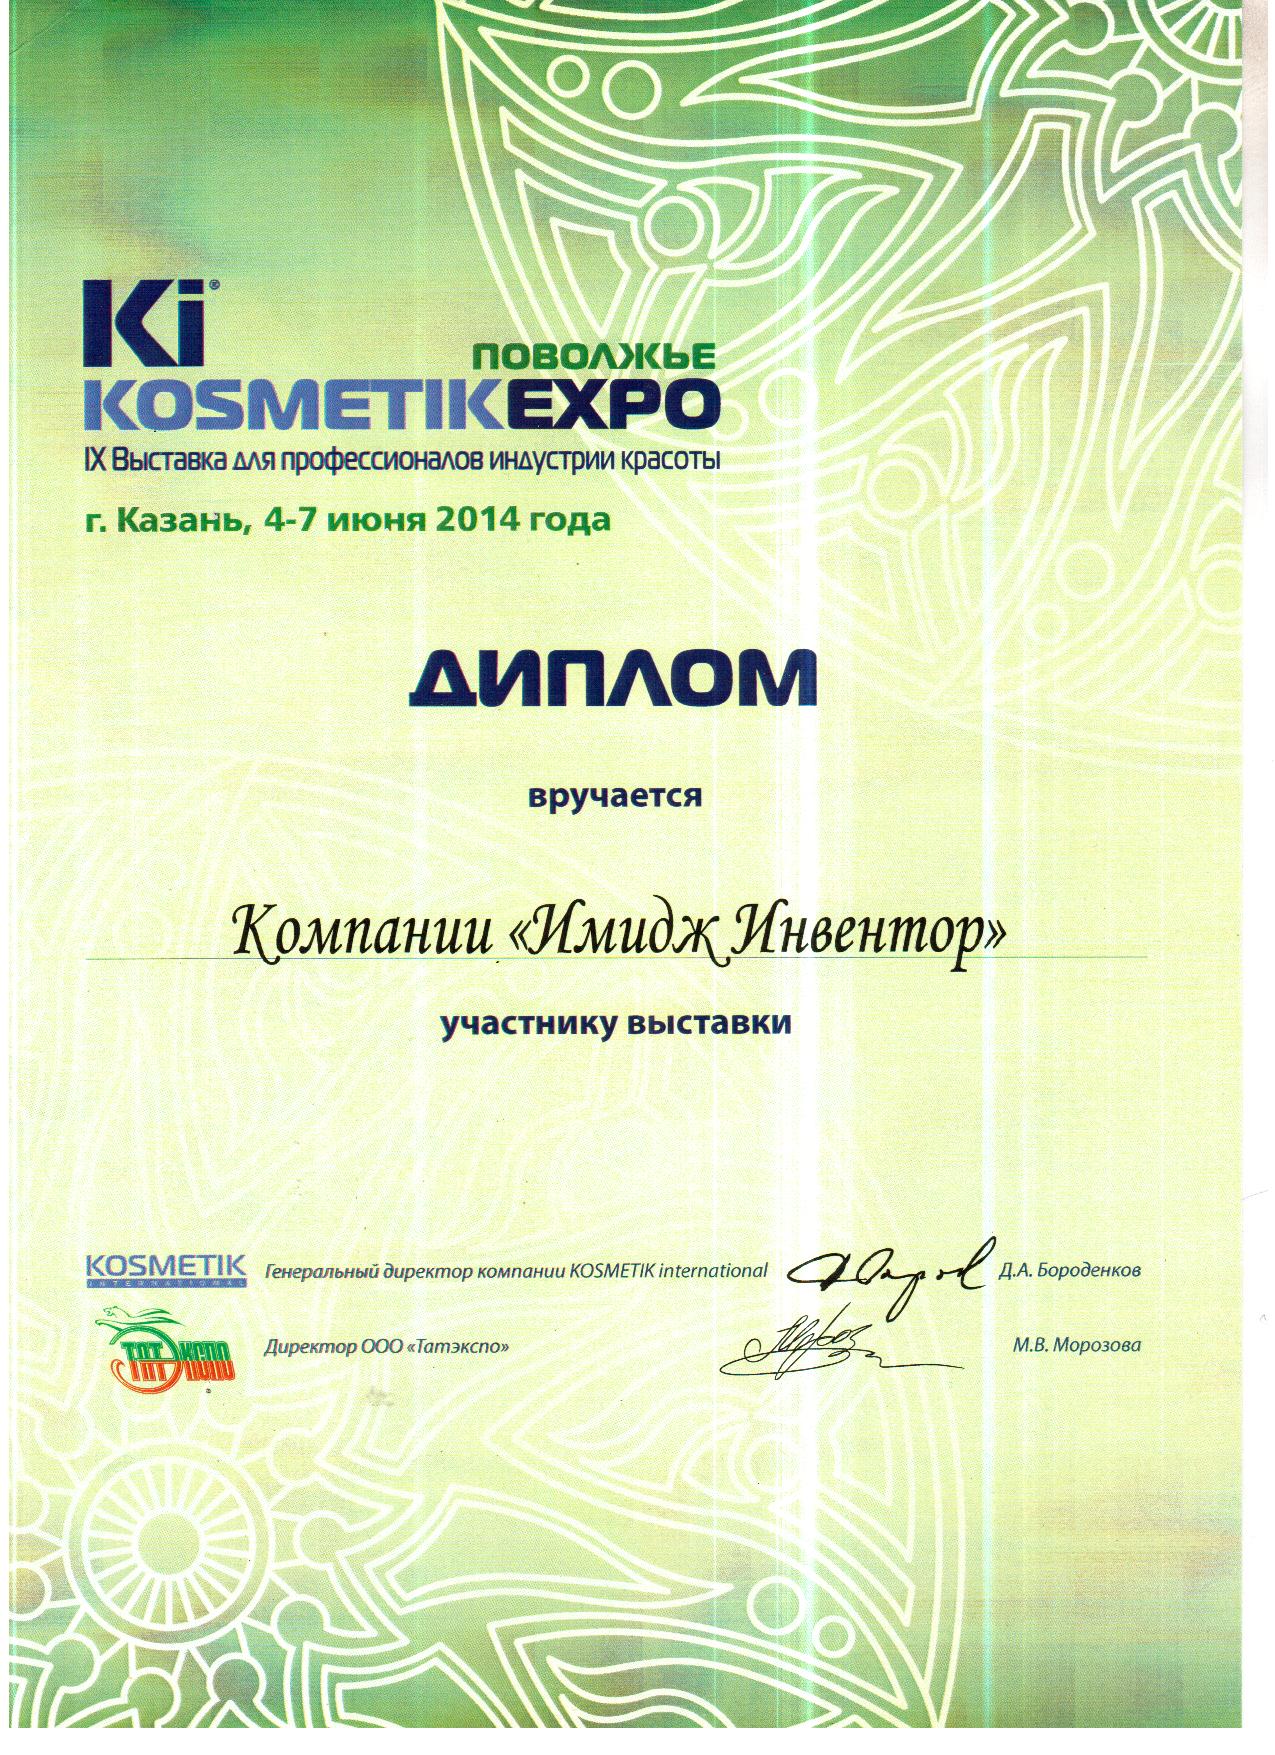 KOSMETIK EXPO 2014